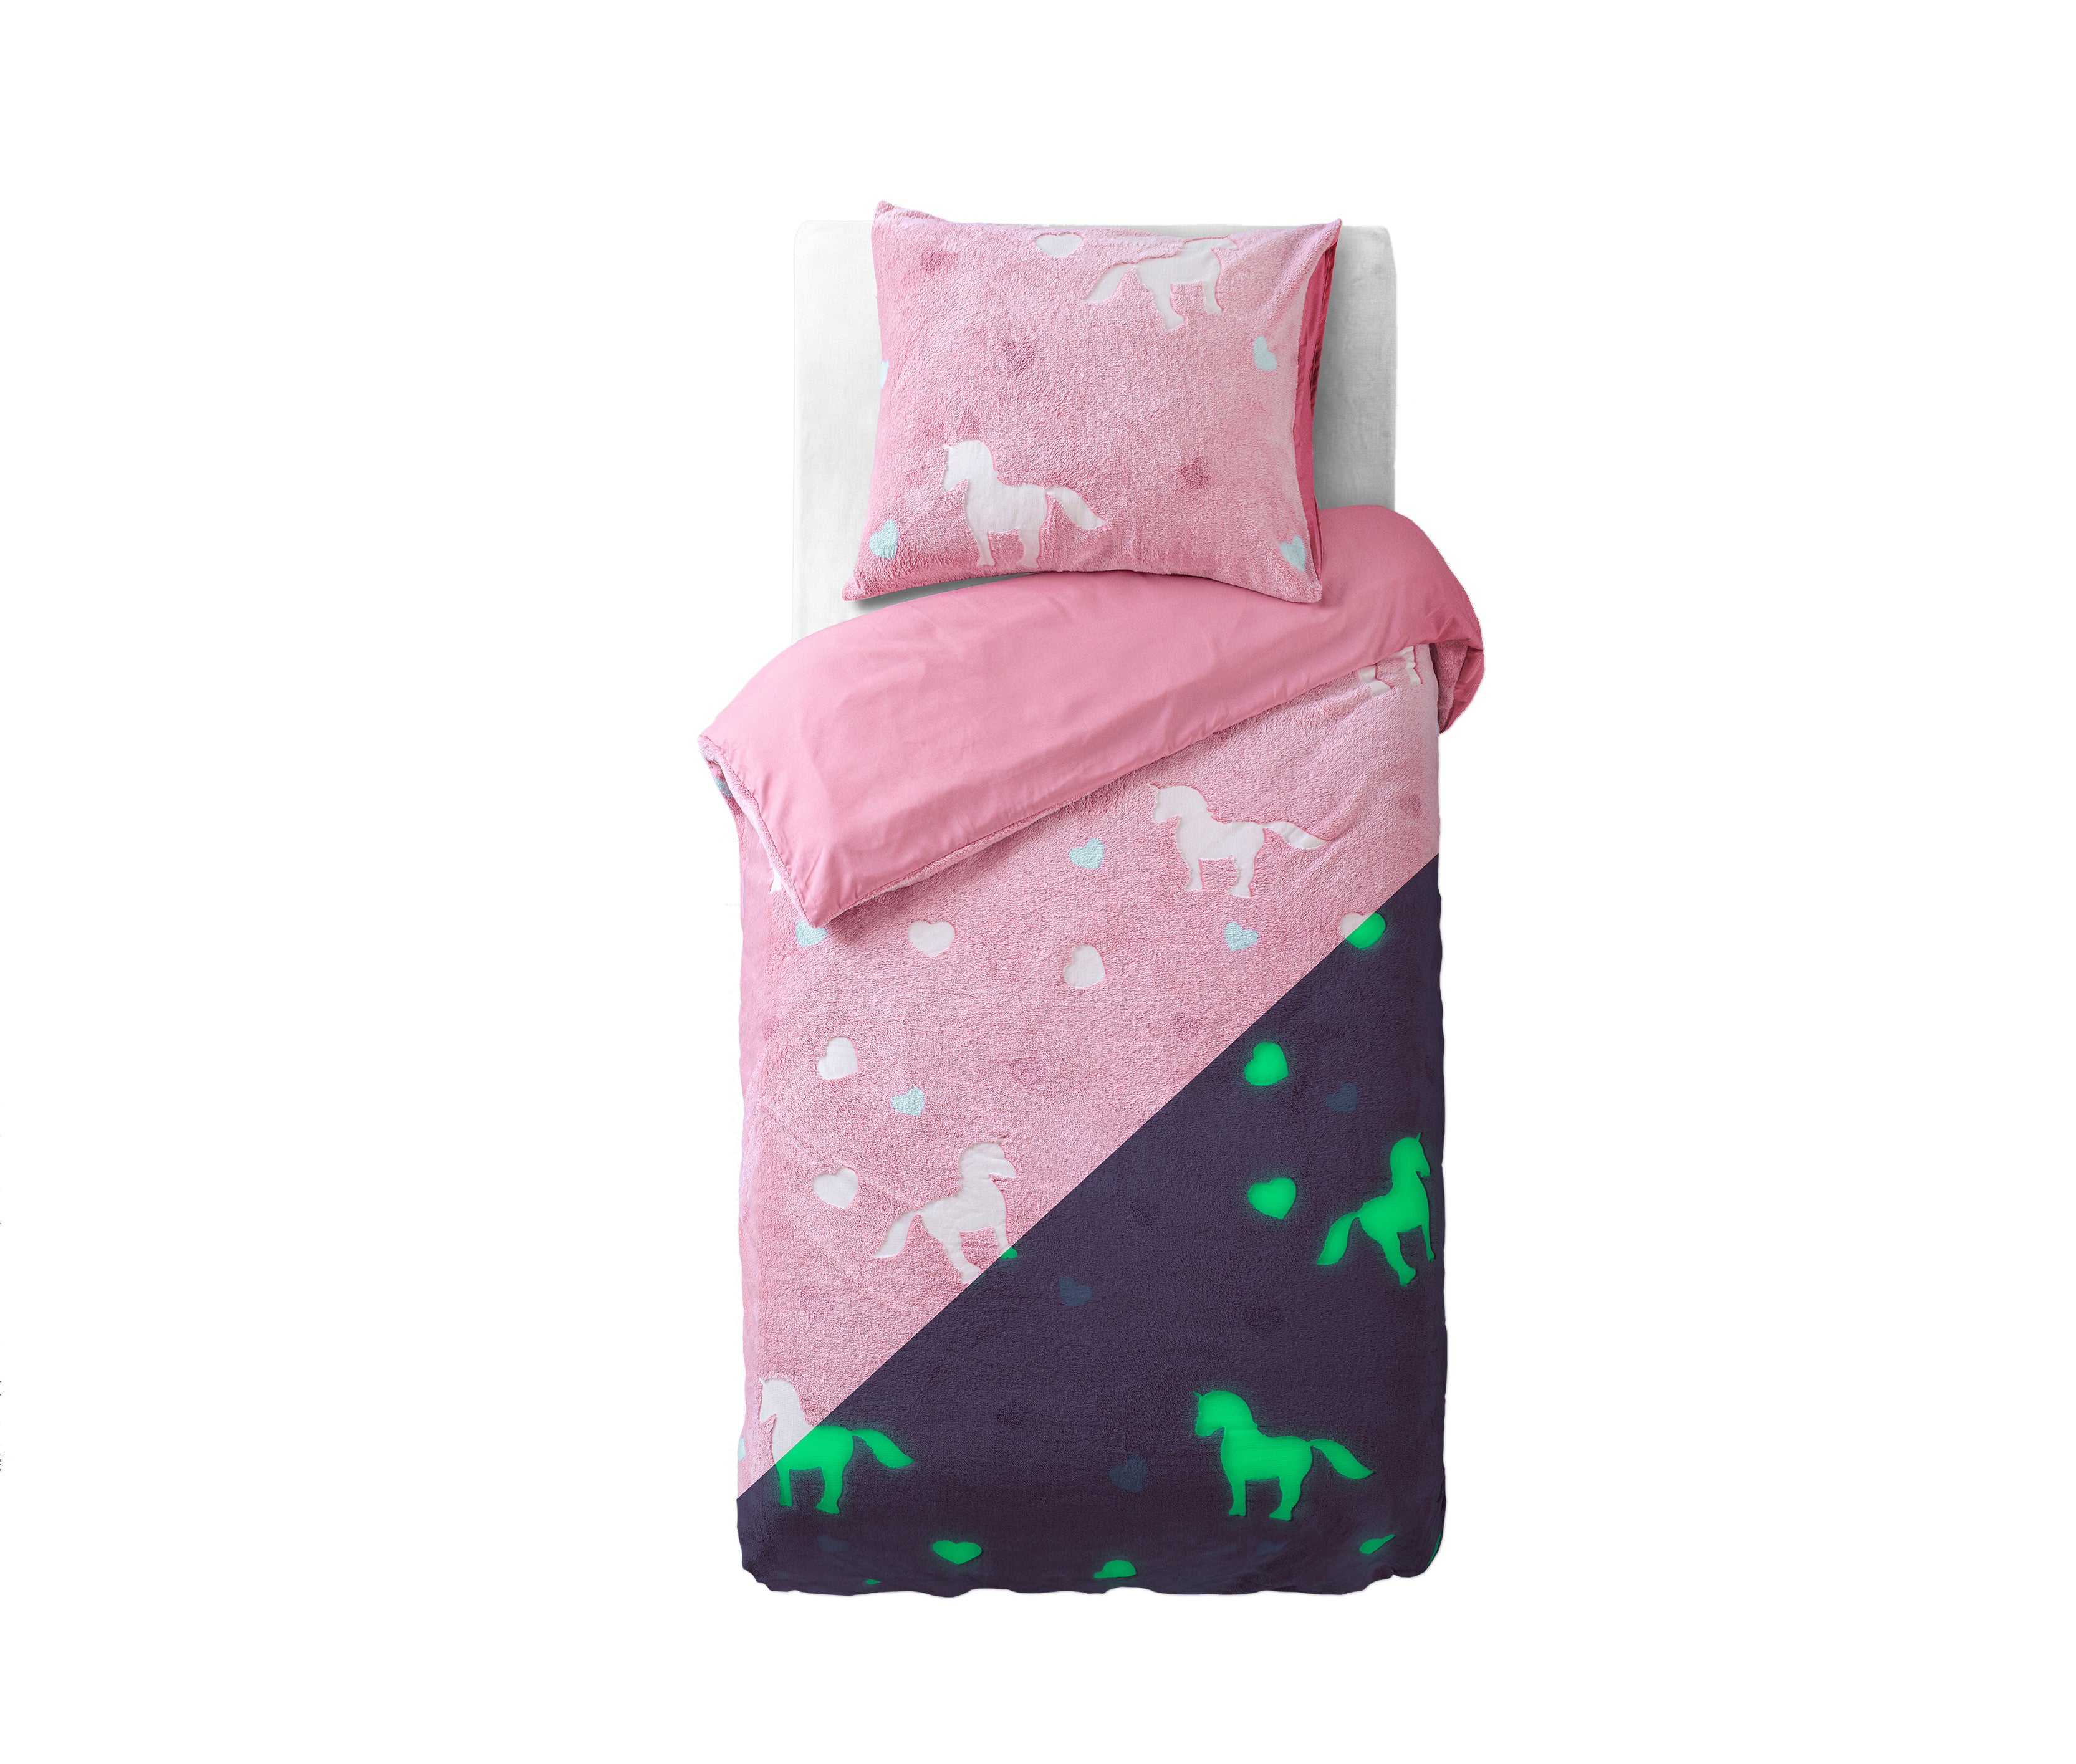 Billede af Glow in the dark unicorn sengesæt, pink, 135 x 200 cm